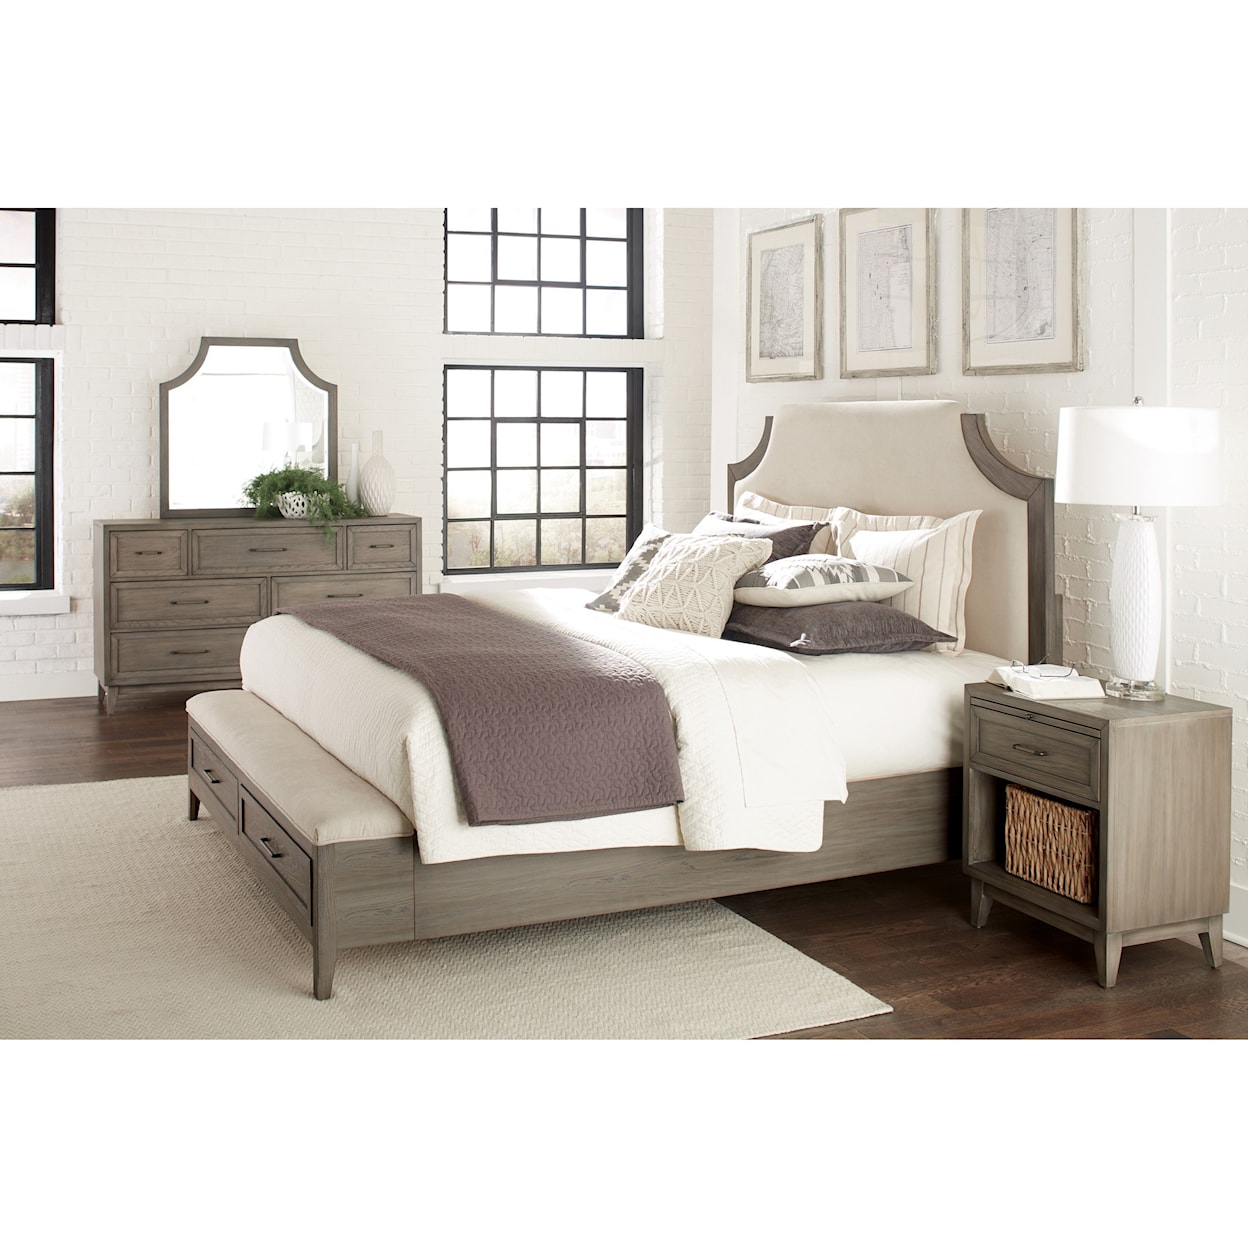 Riverside Furniture Vogue Queen Upholstered Storage Bed